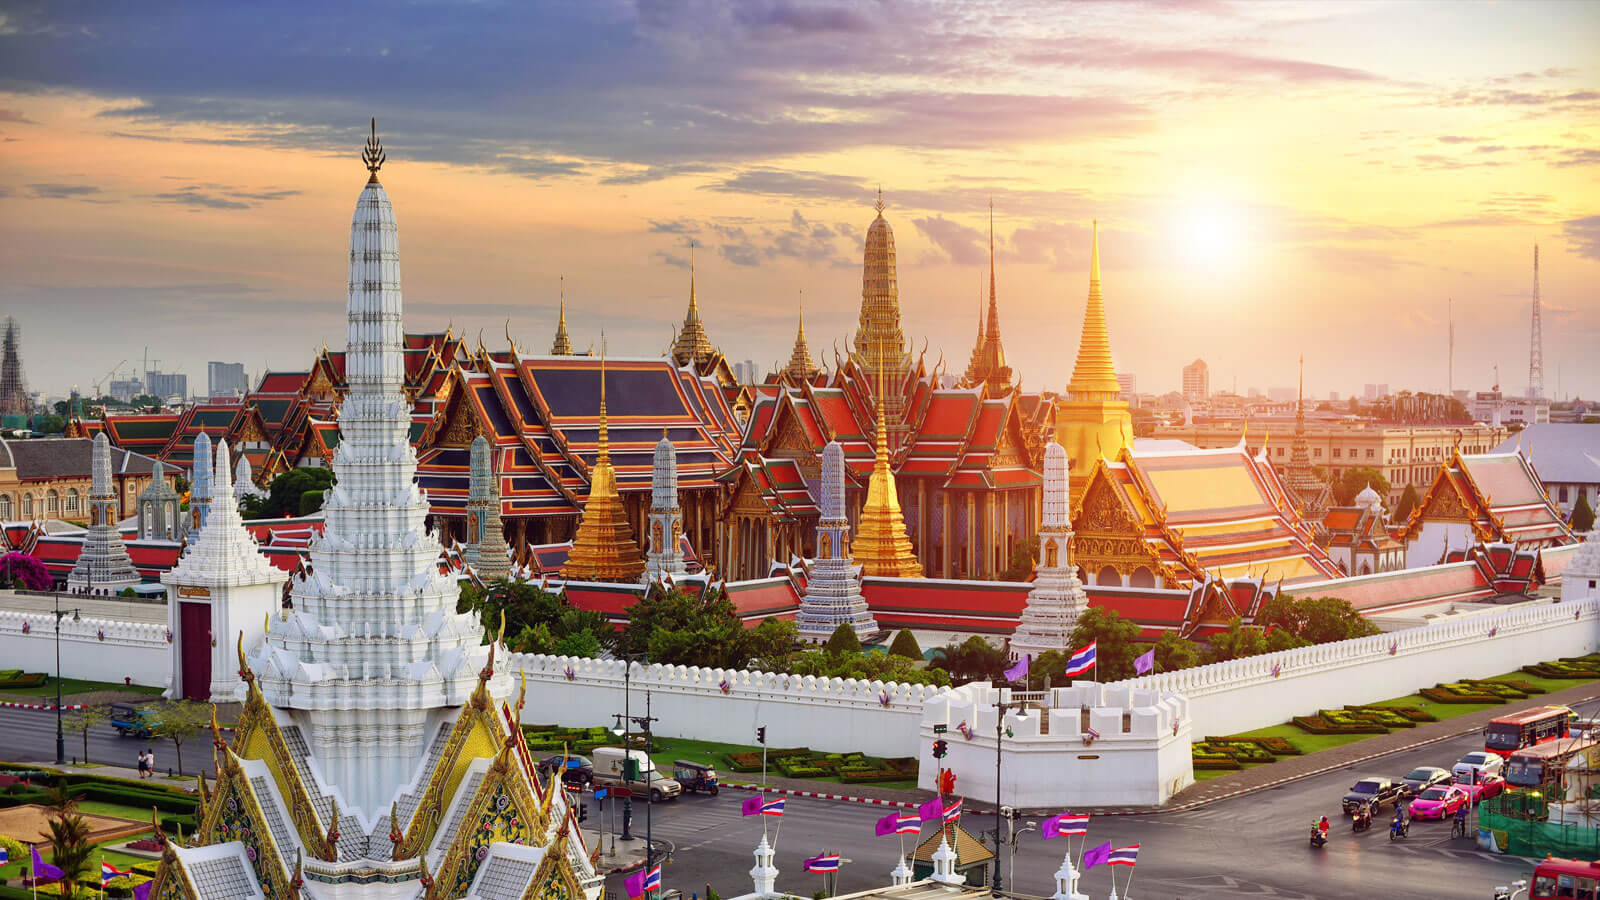 Vi vu "xứ sở chùa vàng" ngay với trọn bộ kinh nghiệm du lịch Thái Lan